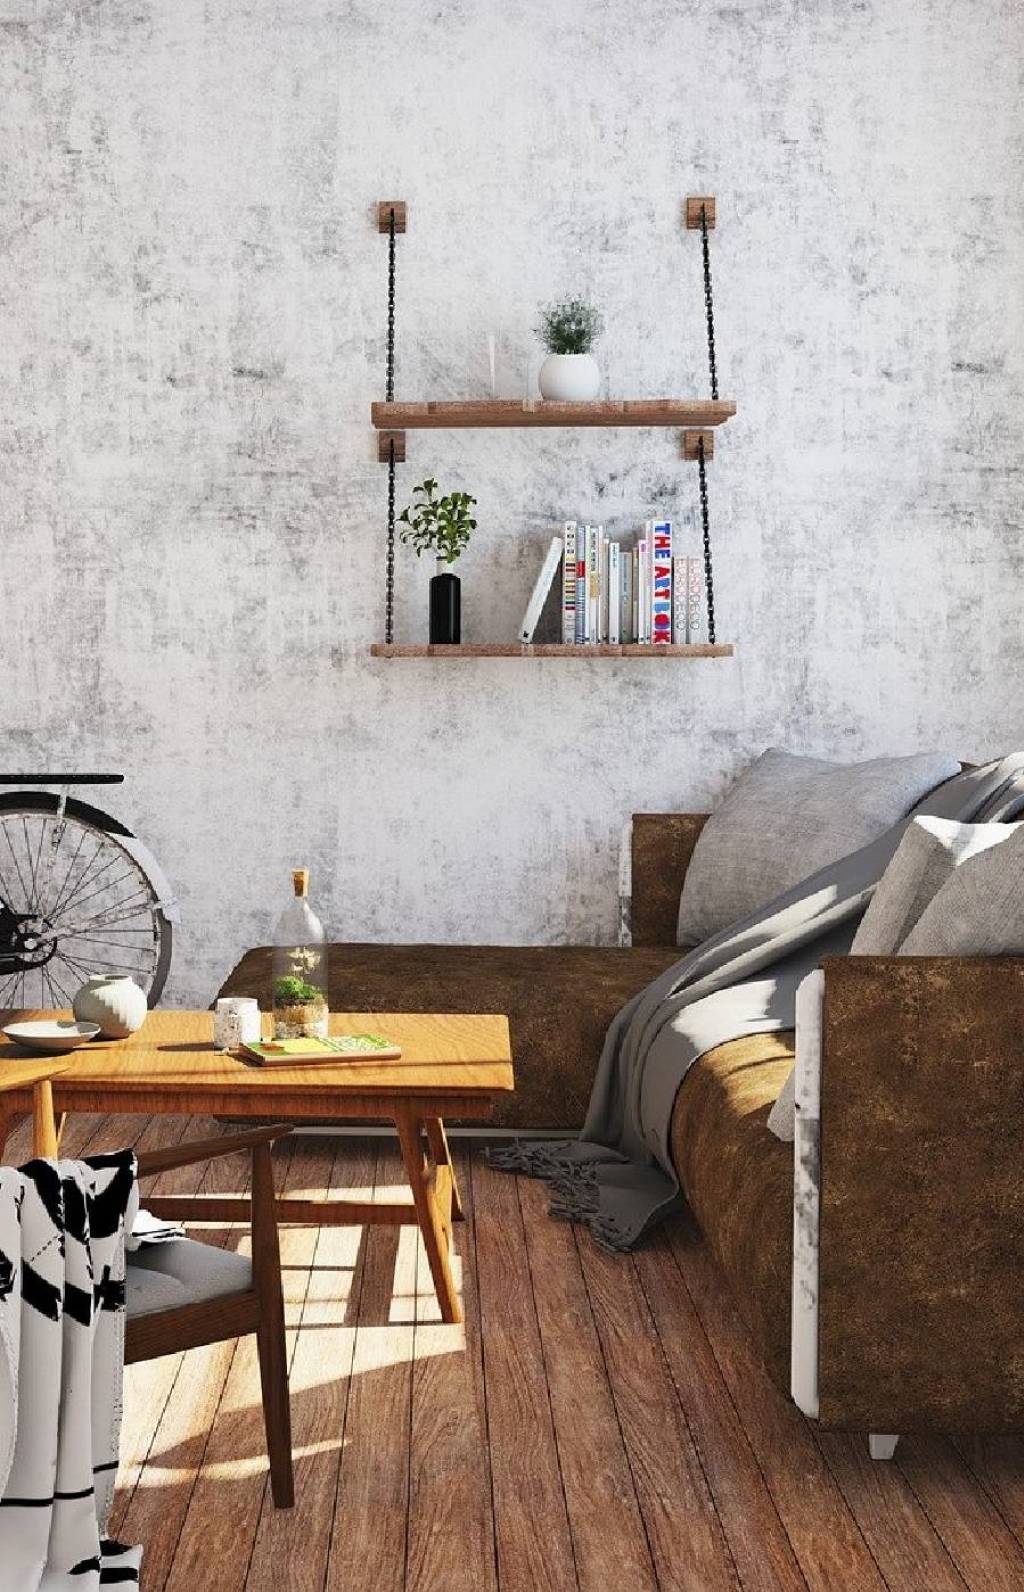 Tuto DIY : du bois pour votre mobilier home-made ! 